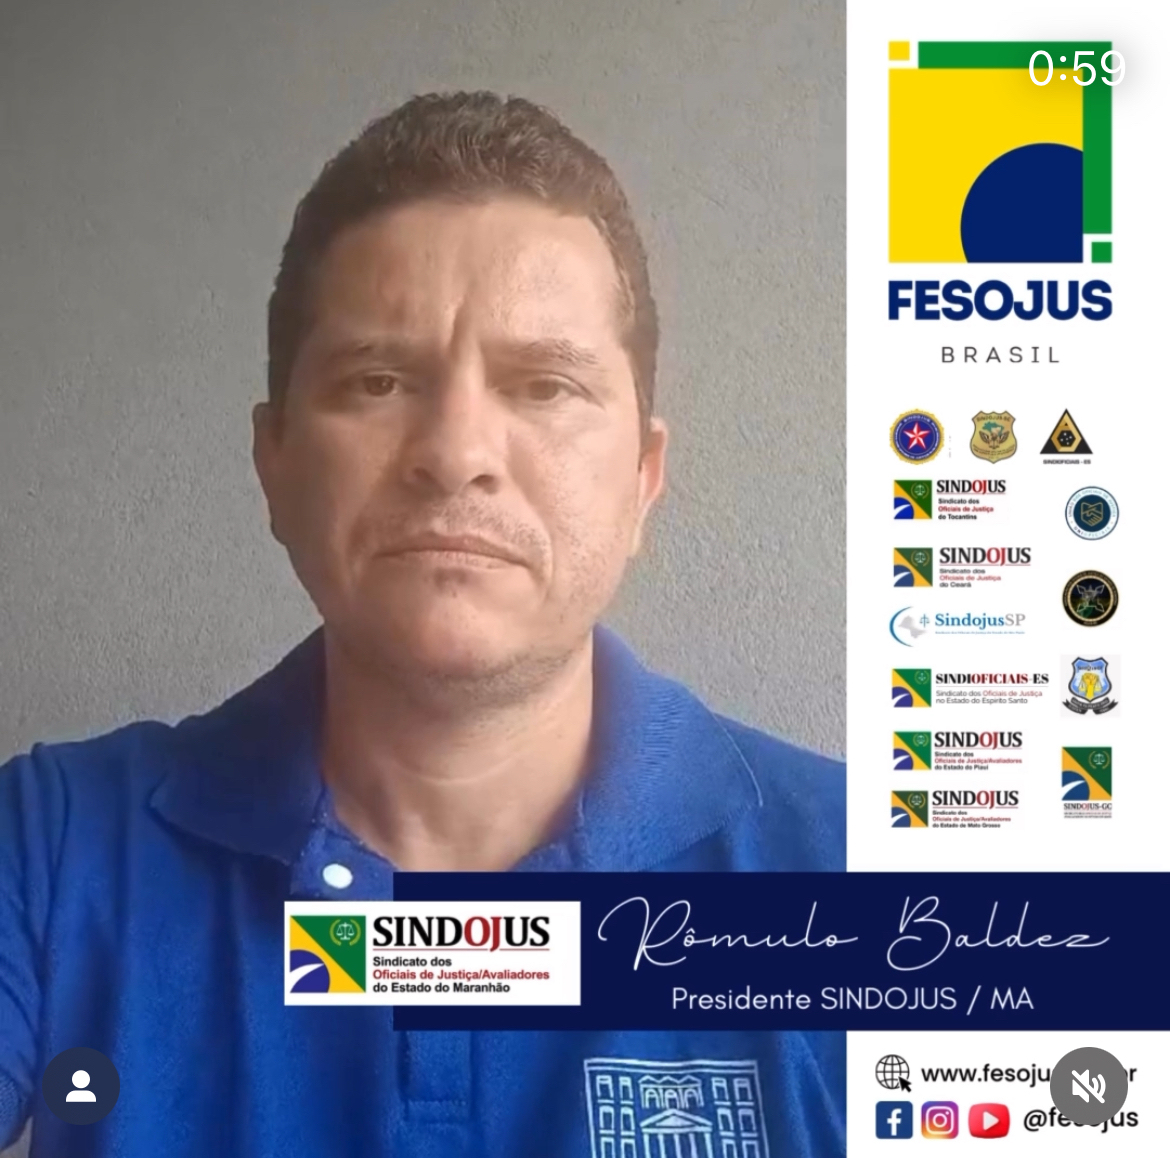 Vitória! Presidente do SINDOJUS/MA, Rômulo Baldez, agradece o empenho da FESOJUS-BR na conquista do registro sindical da entidade